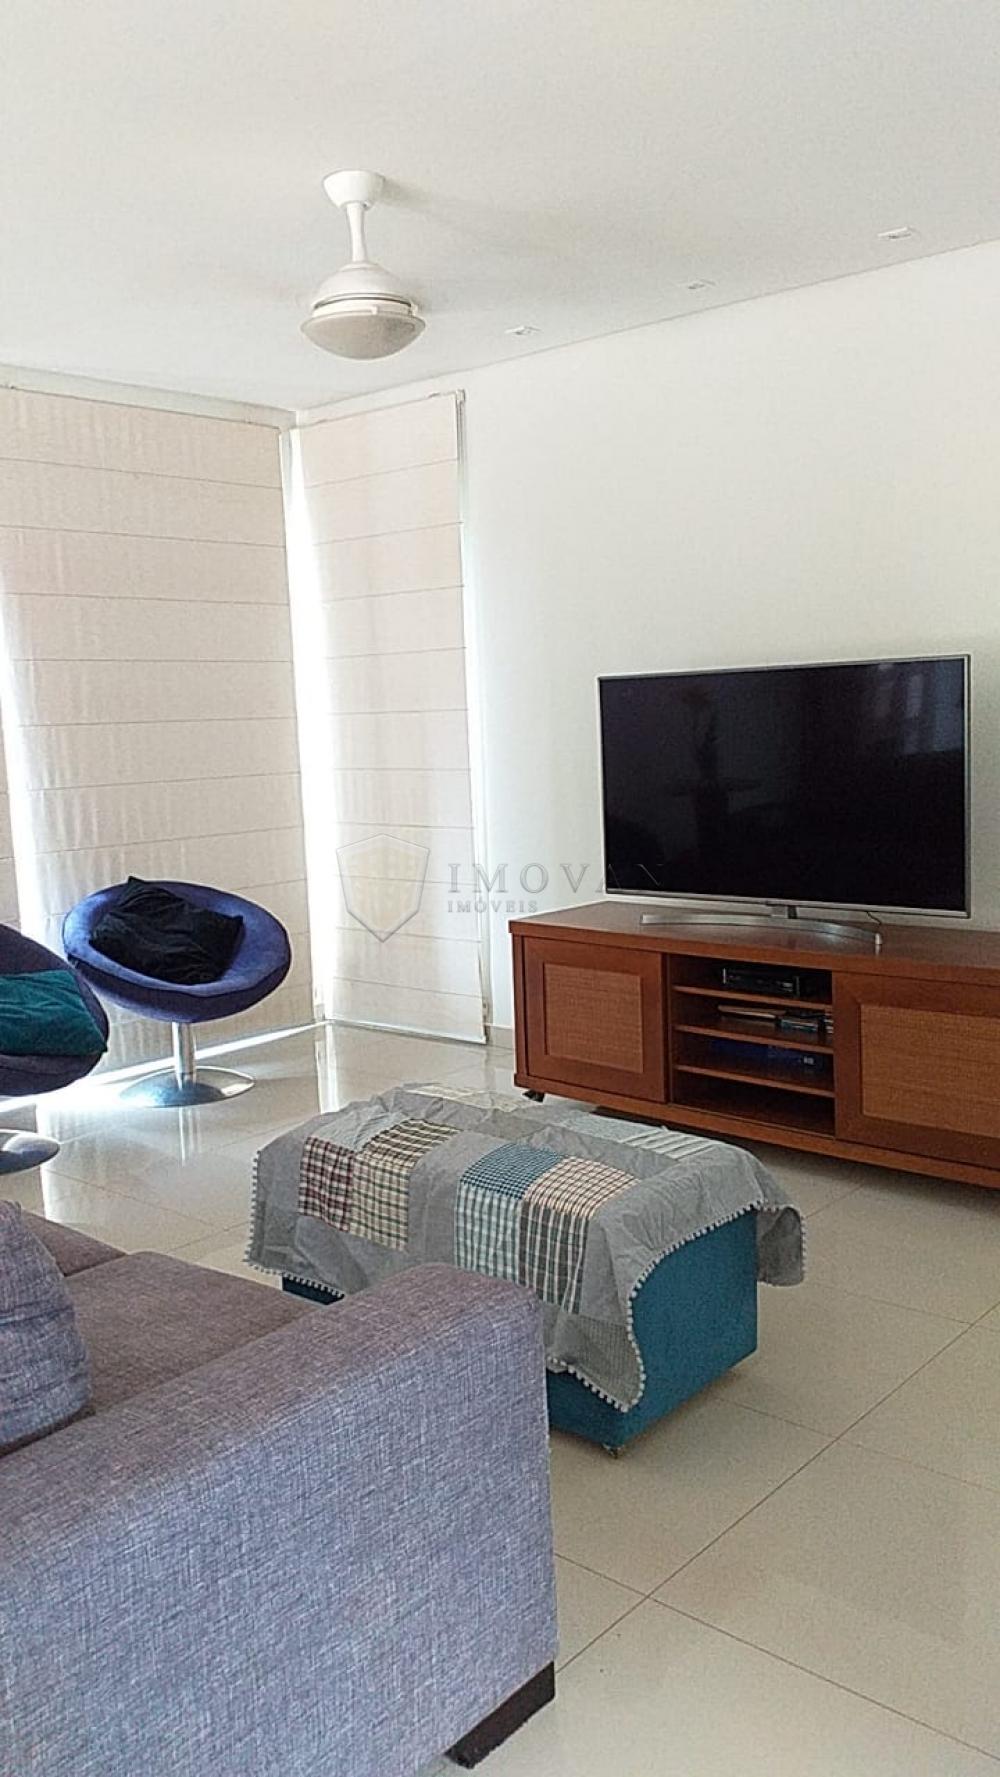 Comprar Casa / Condomínio em Ribeirão Preto R$ 1.450.000,00 - Foto 6